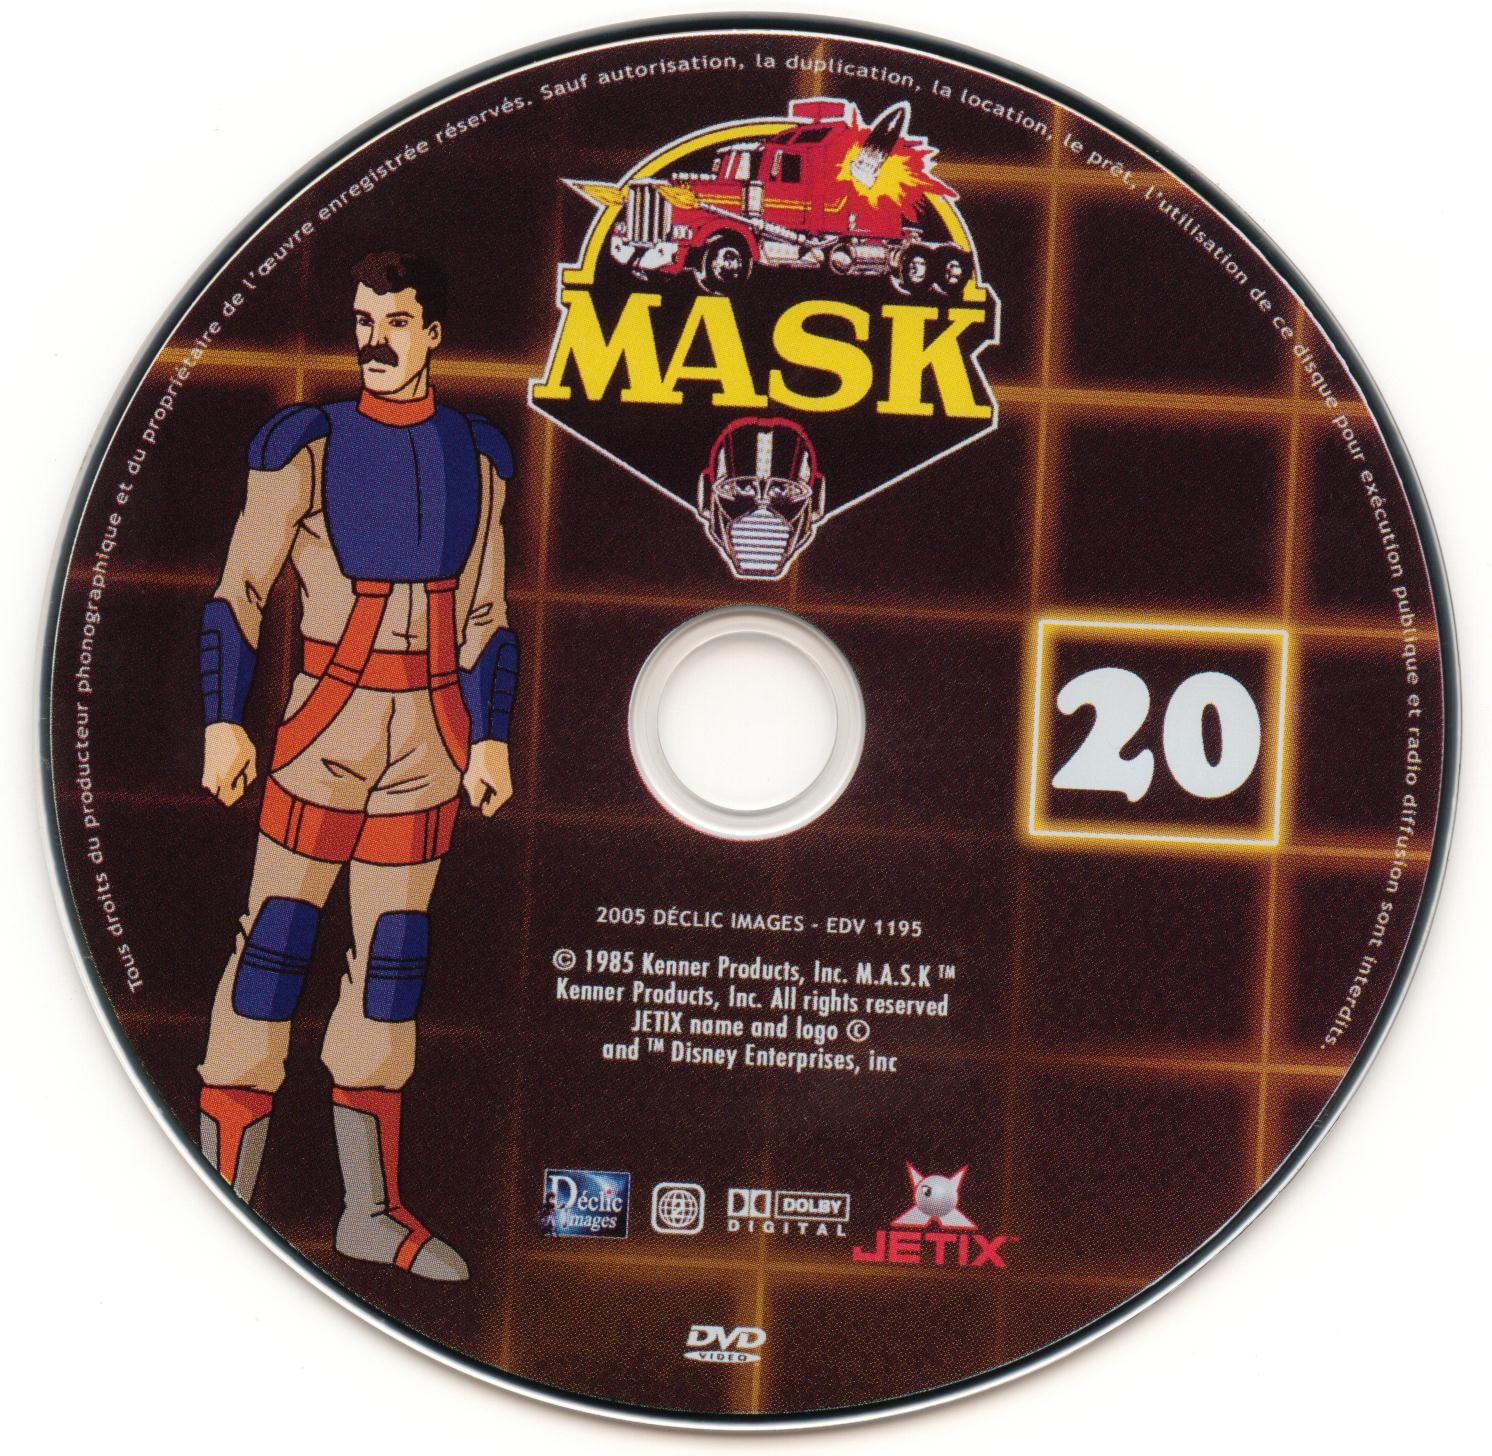 Mask vol 20